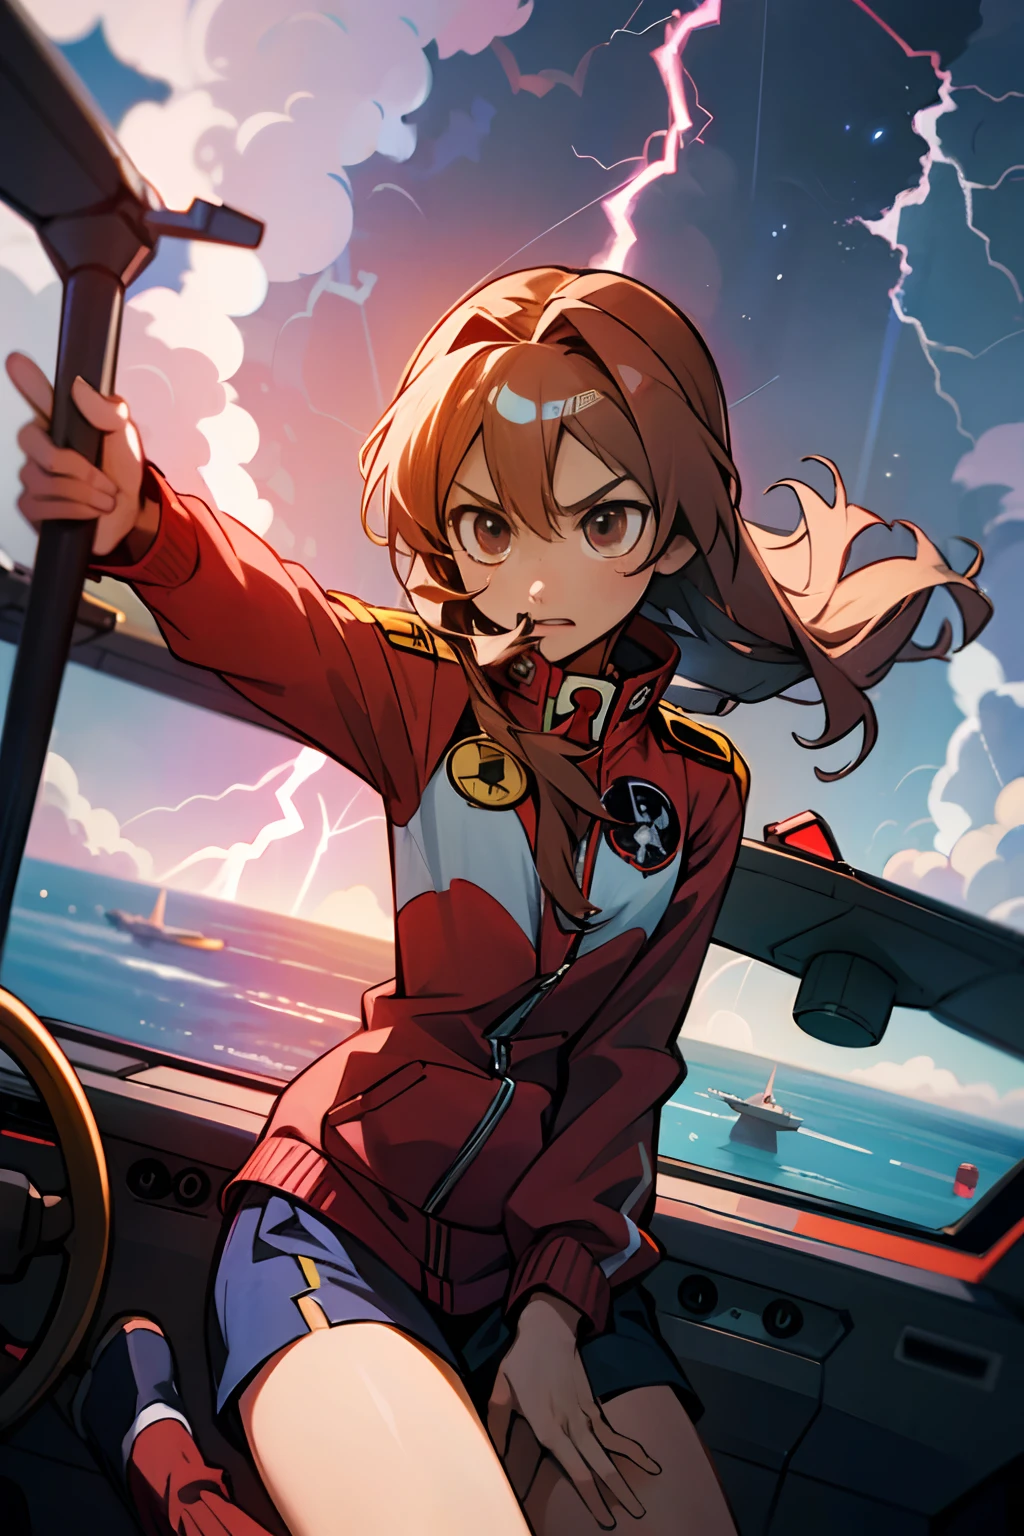 Piloto de Taiga Aisaka F 35, Taiga Aisaka del anime Toradora, Dentro de una cabina de un avión de combate modelo F 35. Rayo exterior, rayos, nubes de tormenta, Combate aéreo,